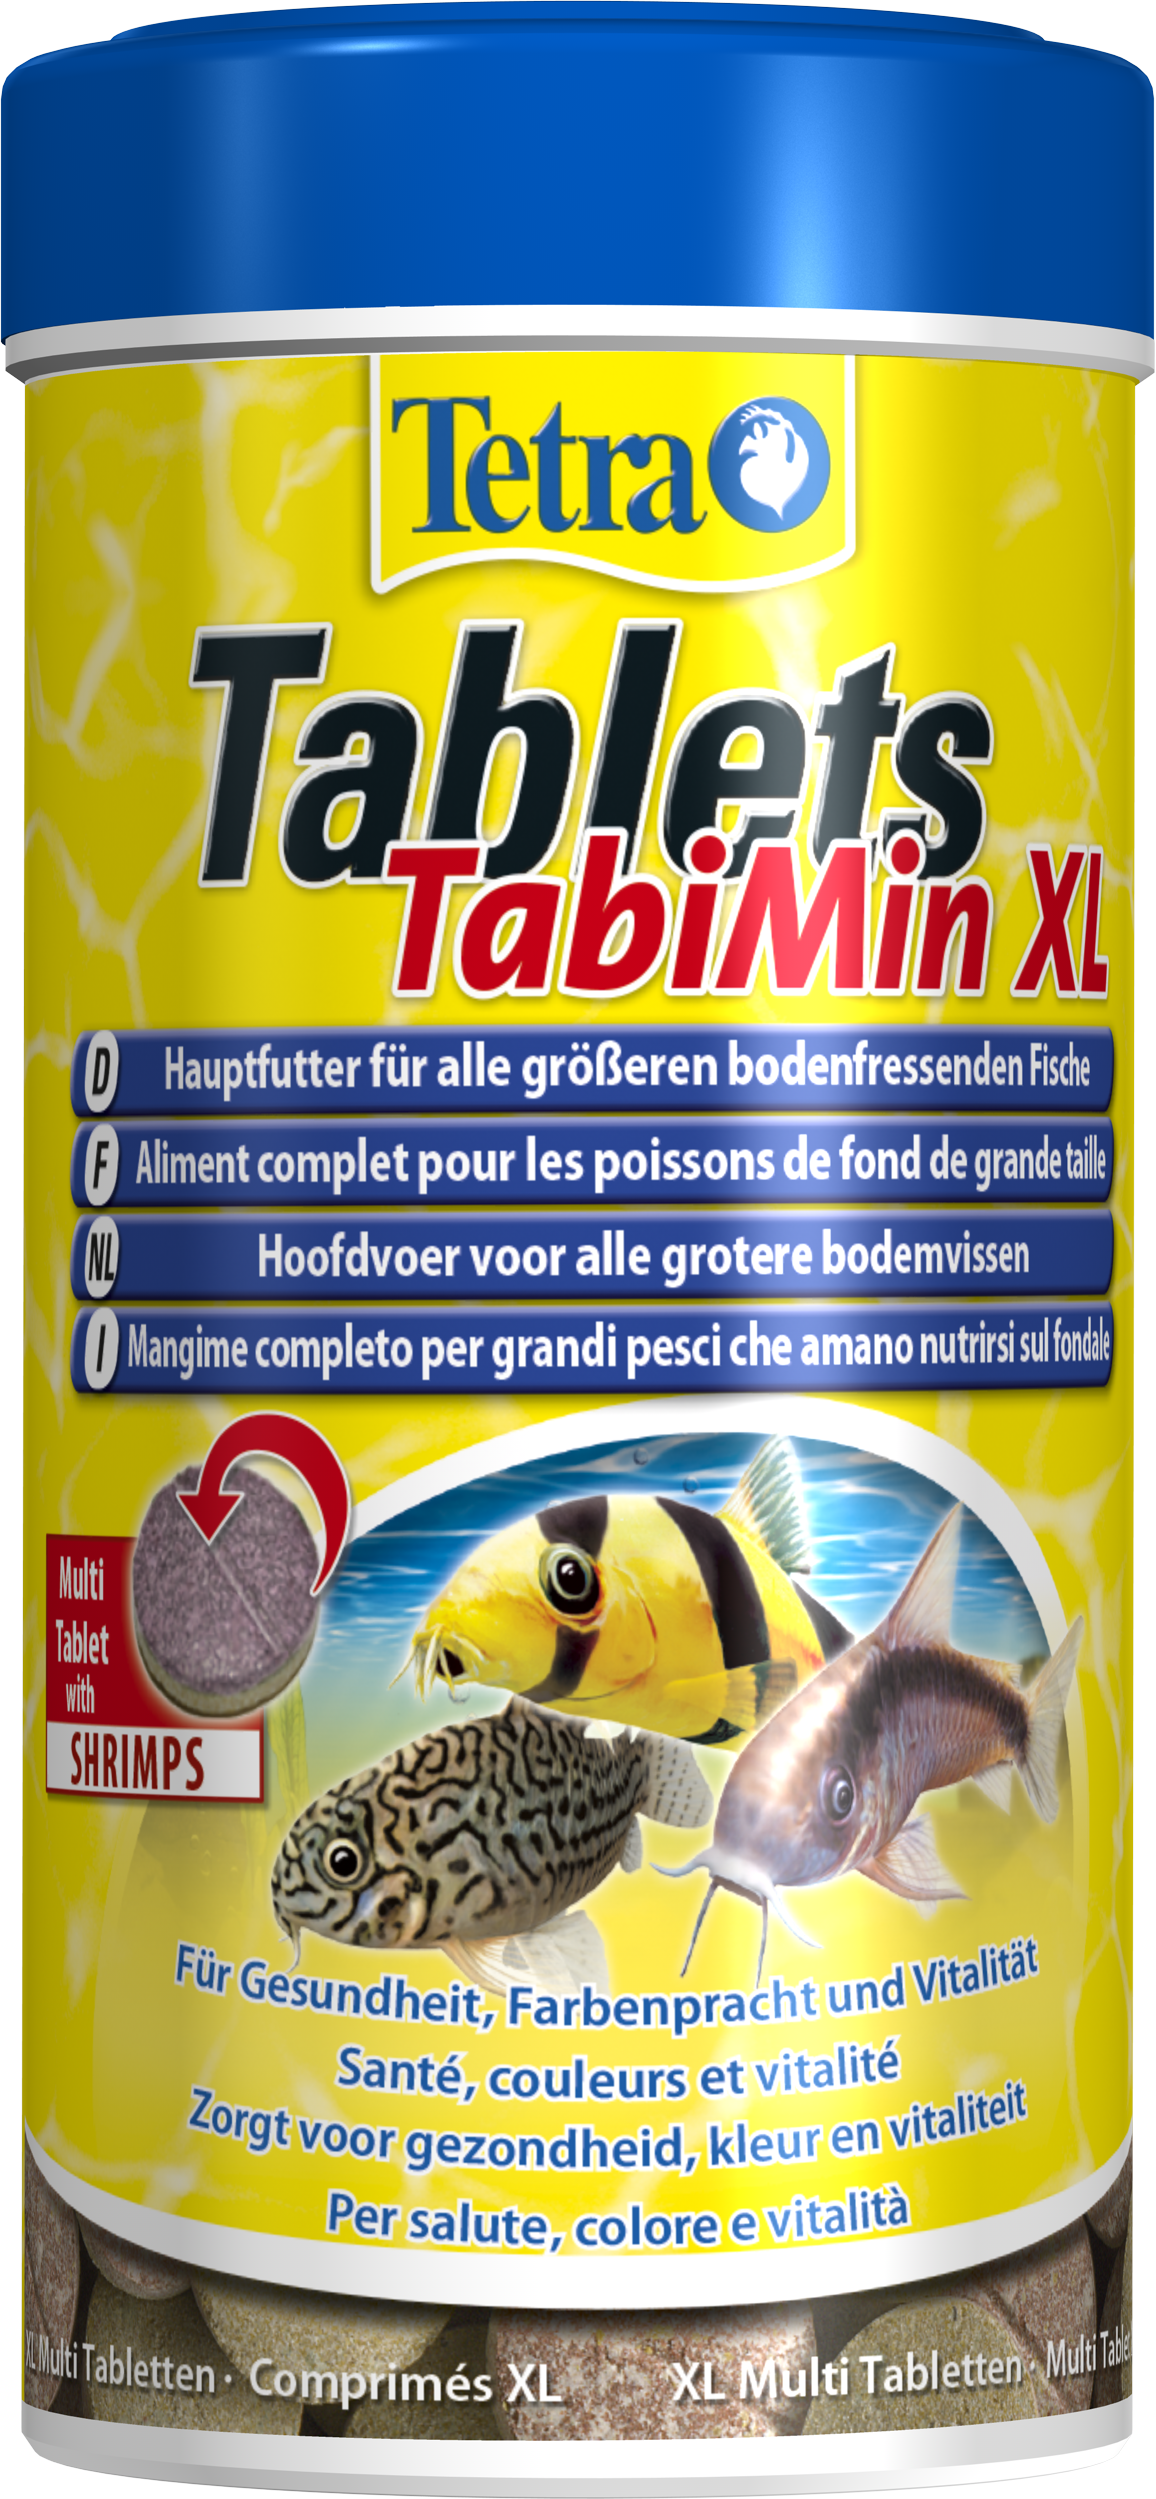 Tetra Tablets TabiMin XL 250ml